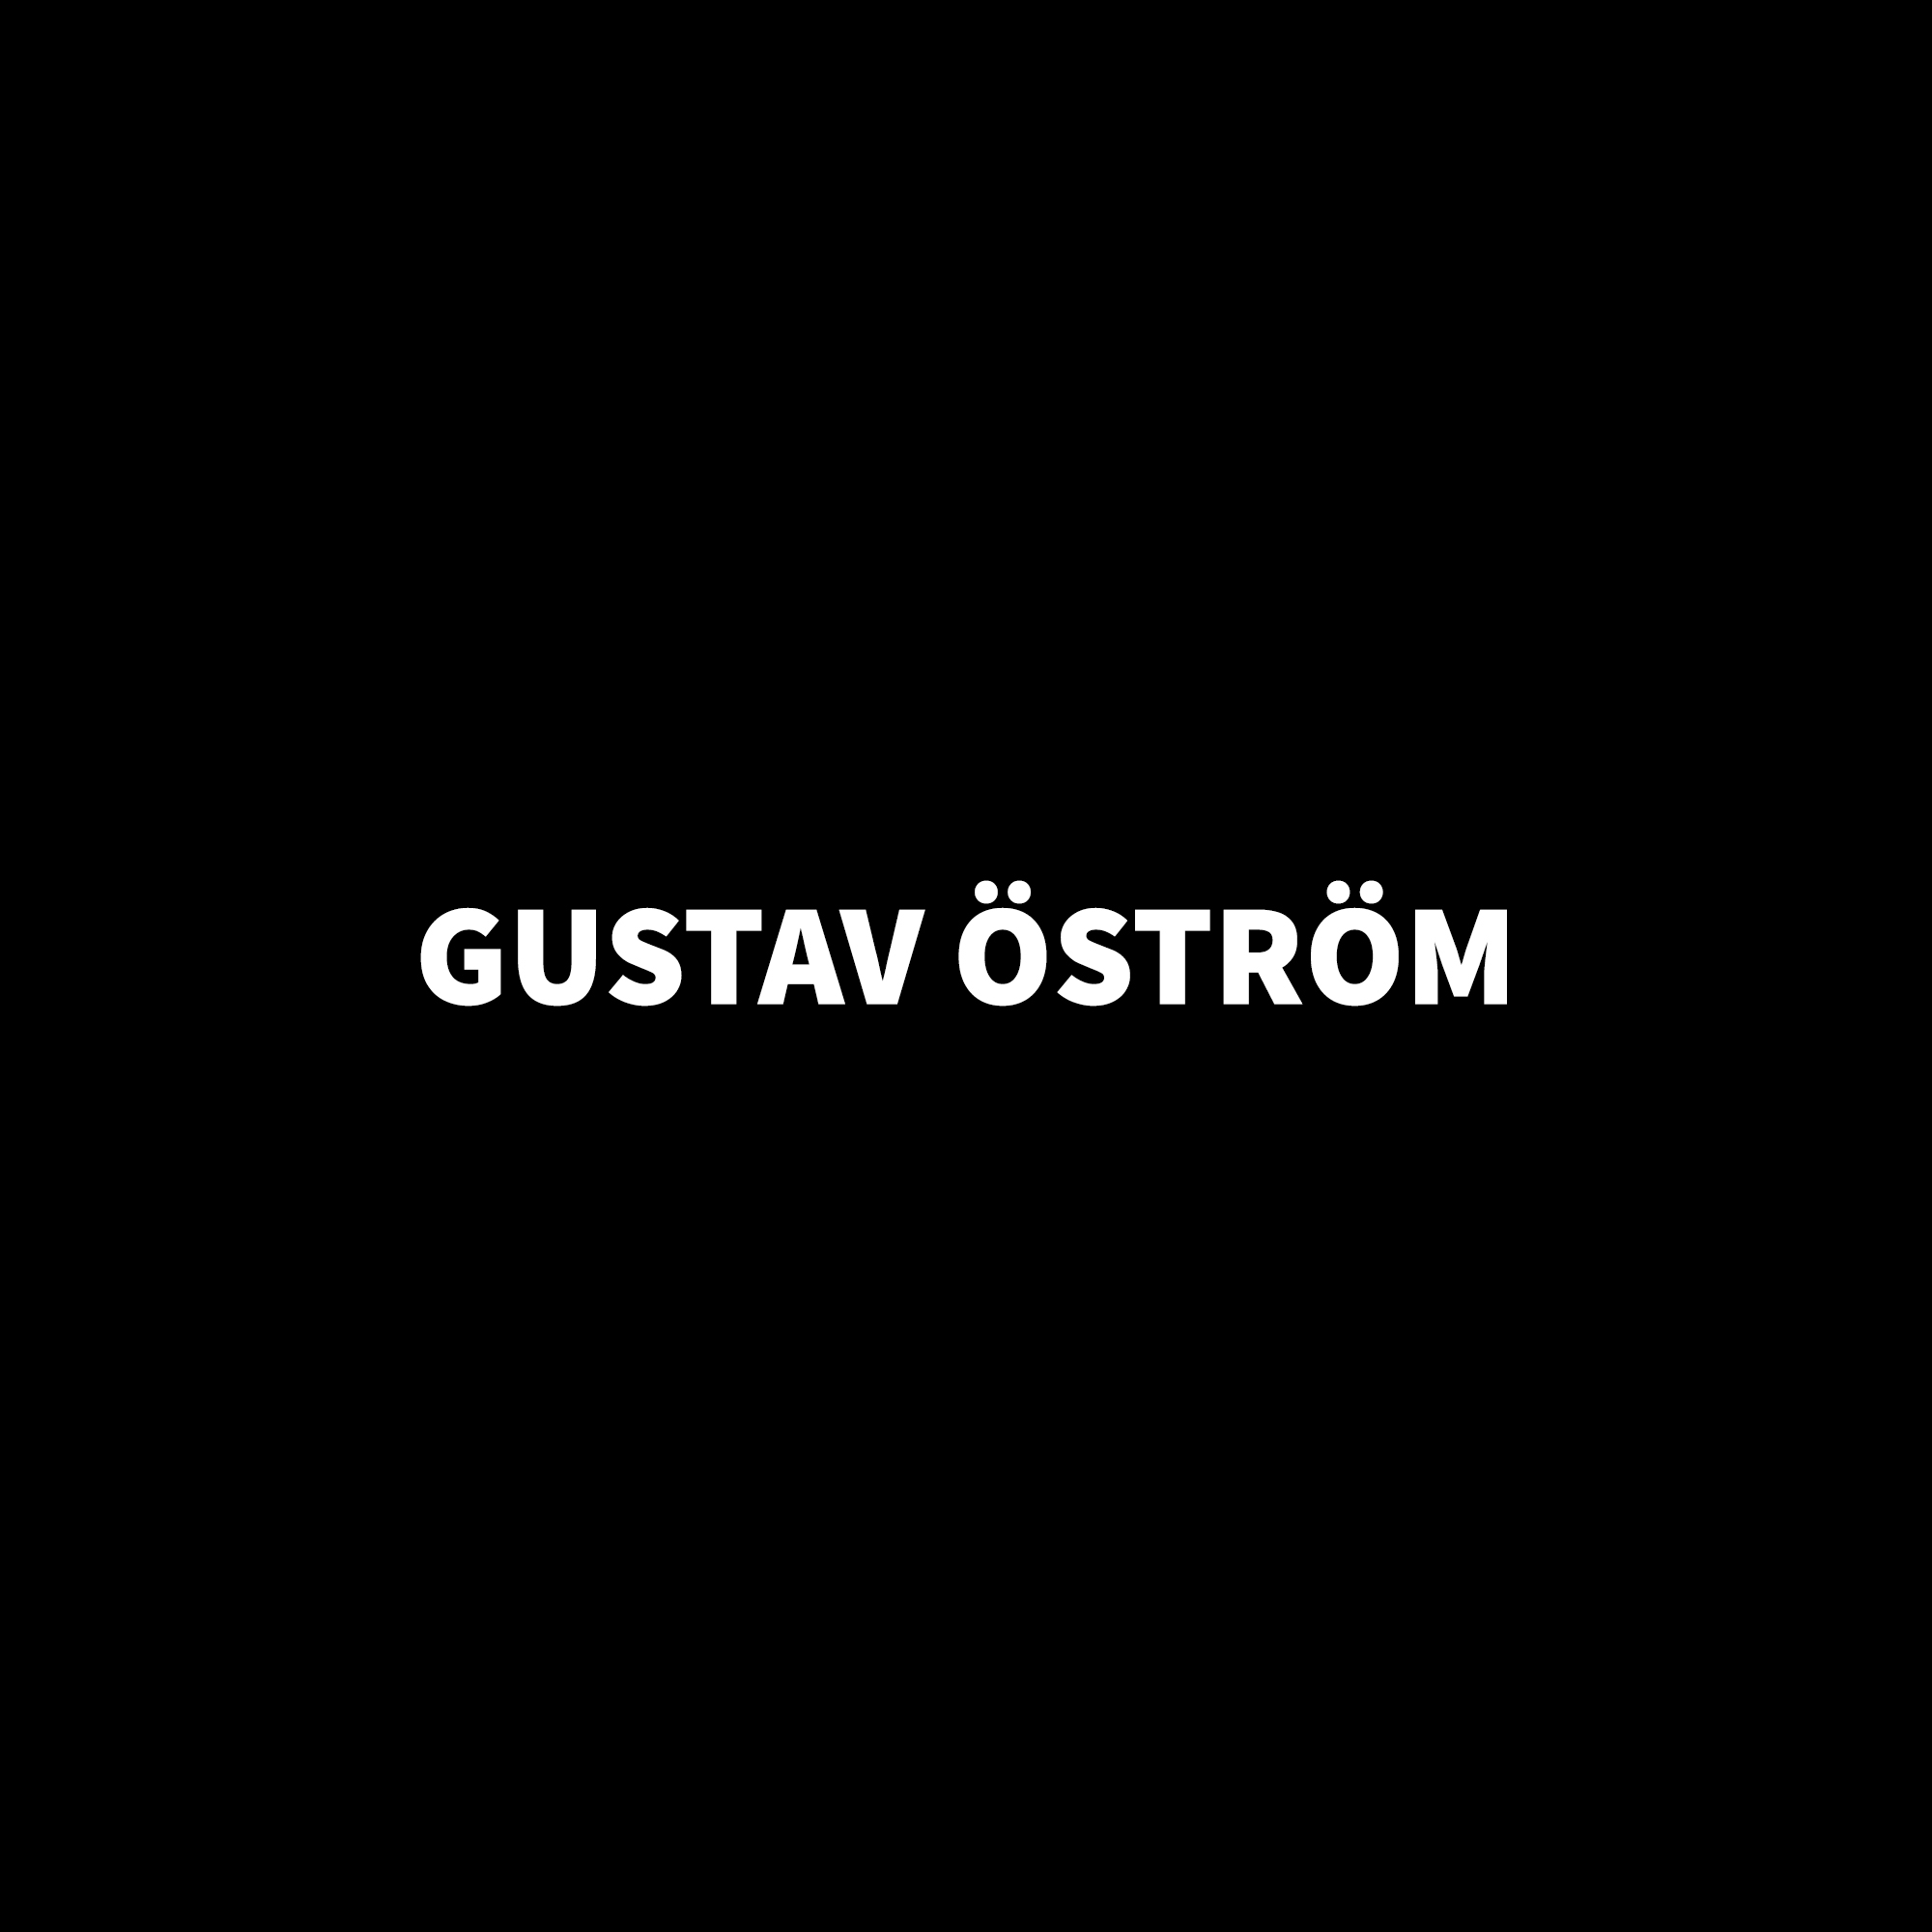 Gustav Öström